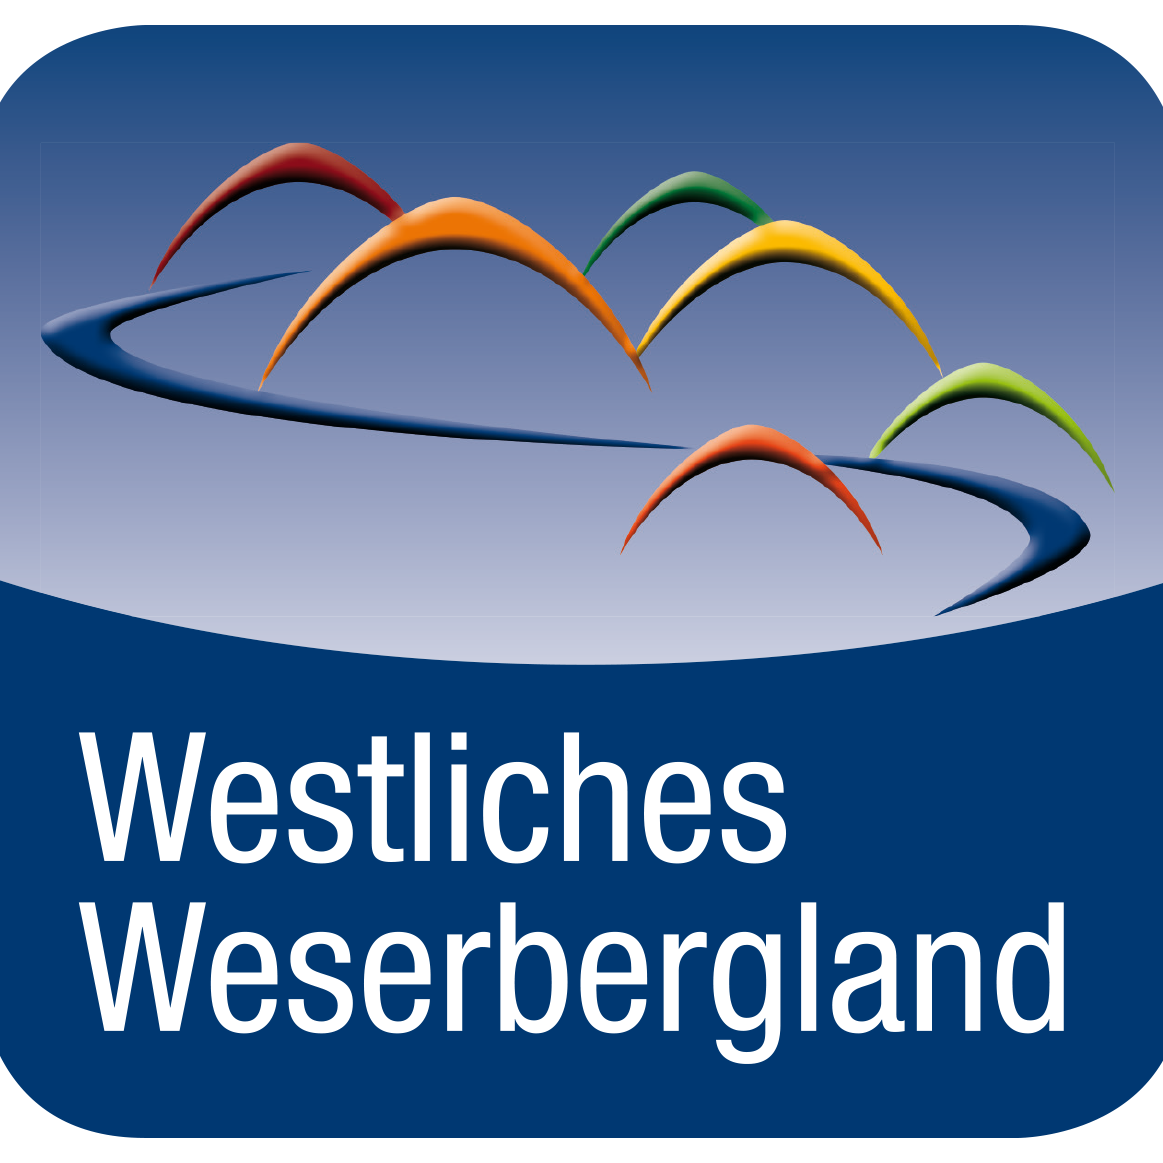 Hier twittert das TWW über Interessantes & Neues aus Rinteln, Hessisch Oldendorf, Porta Westfalica, Emmerthal, Aerzen und dem Auetal.